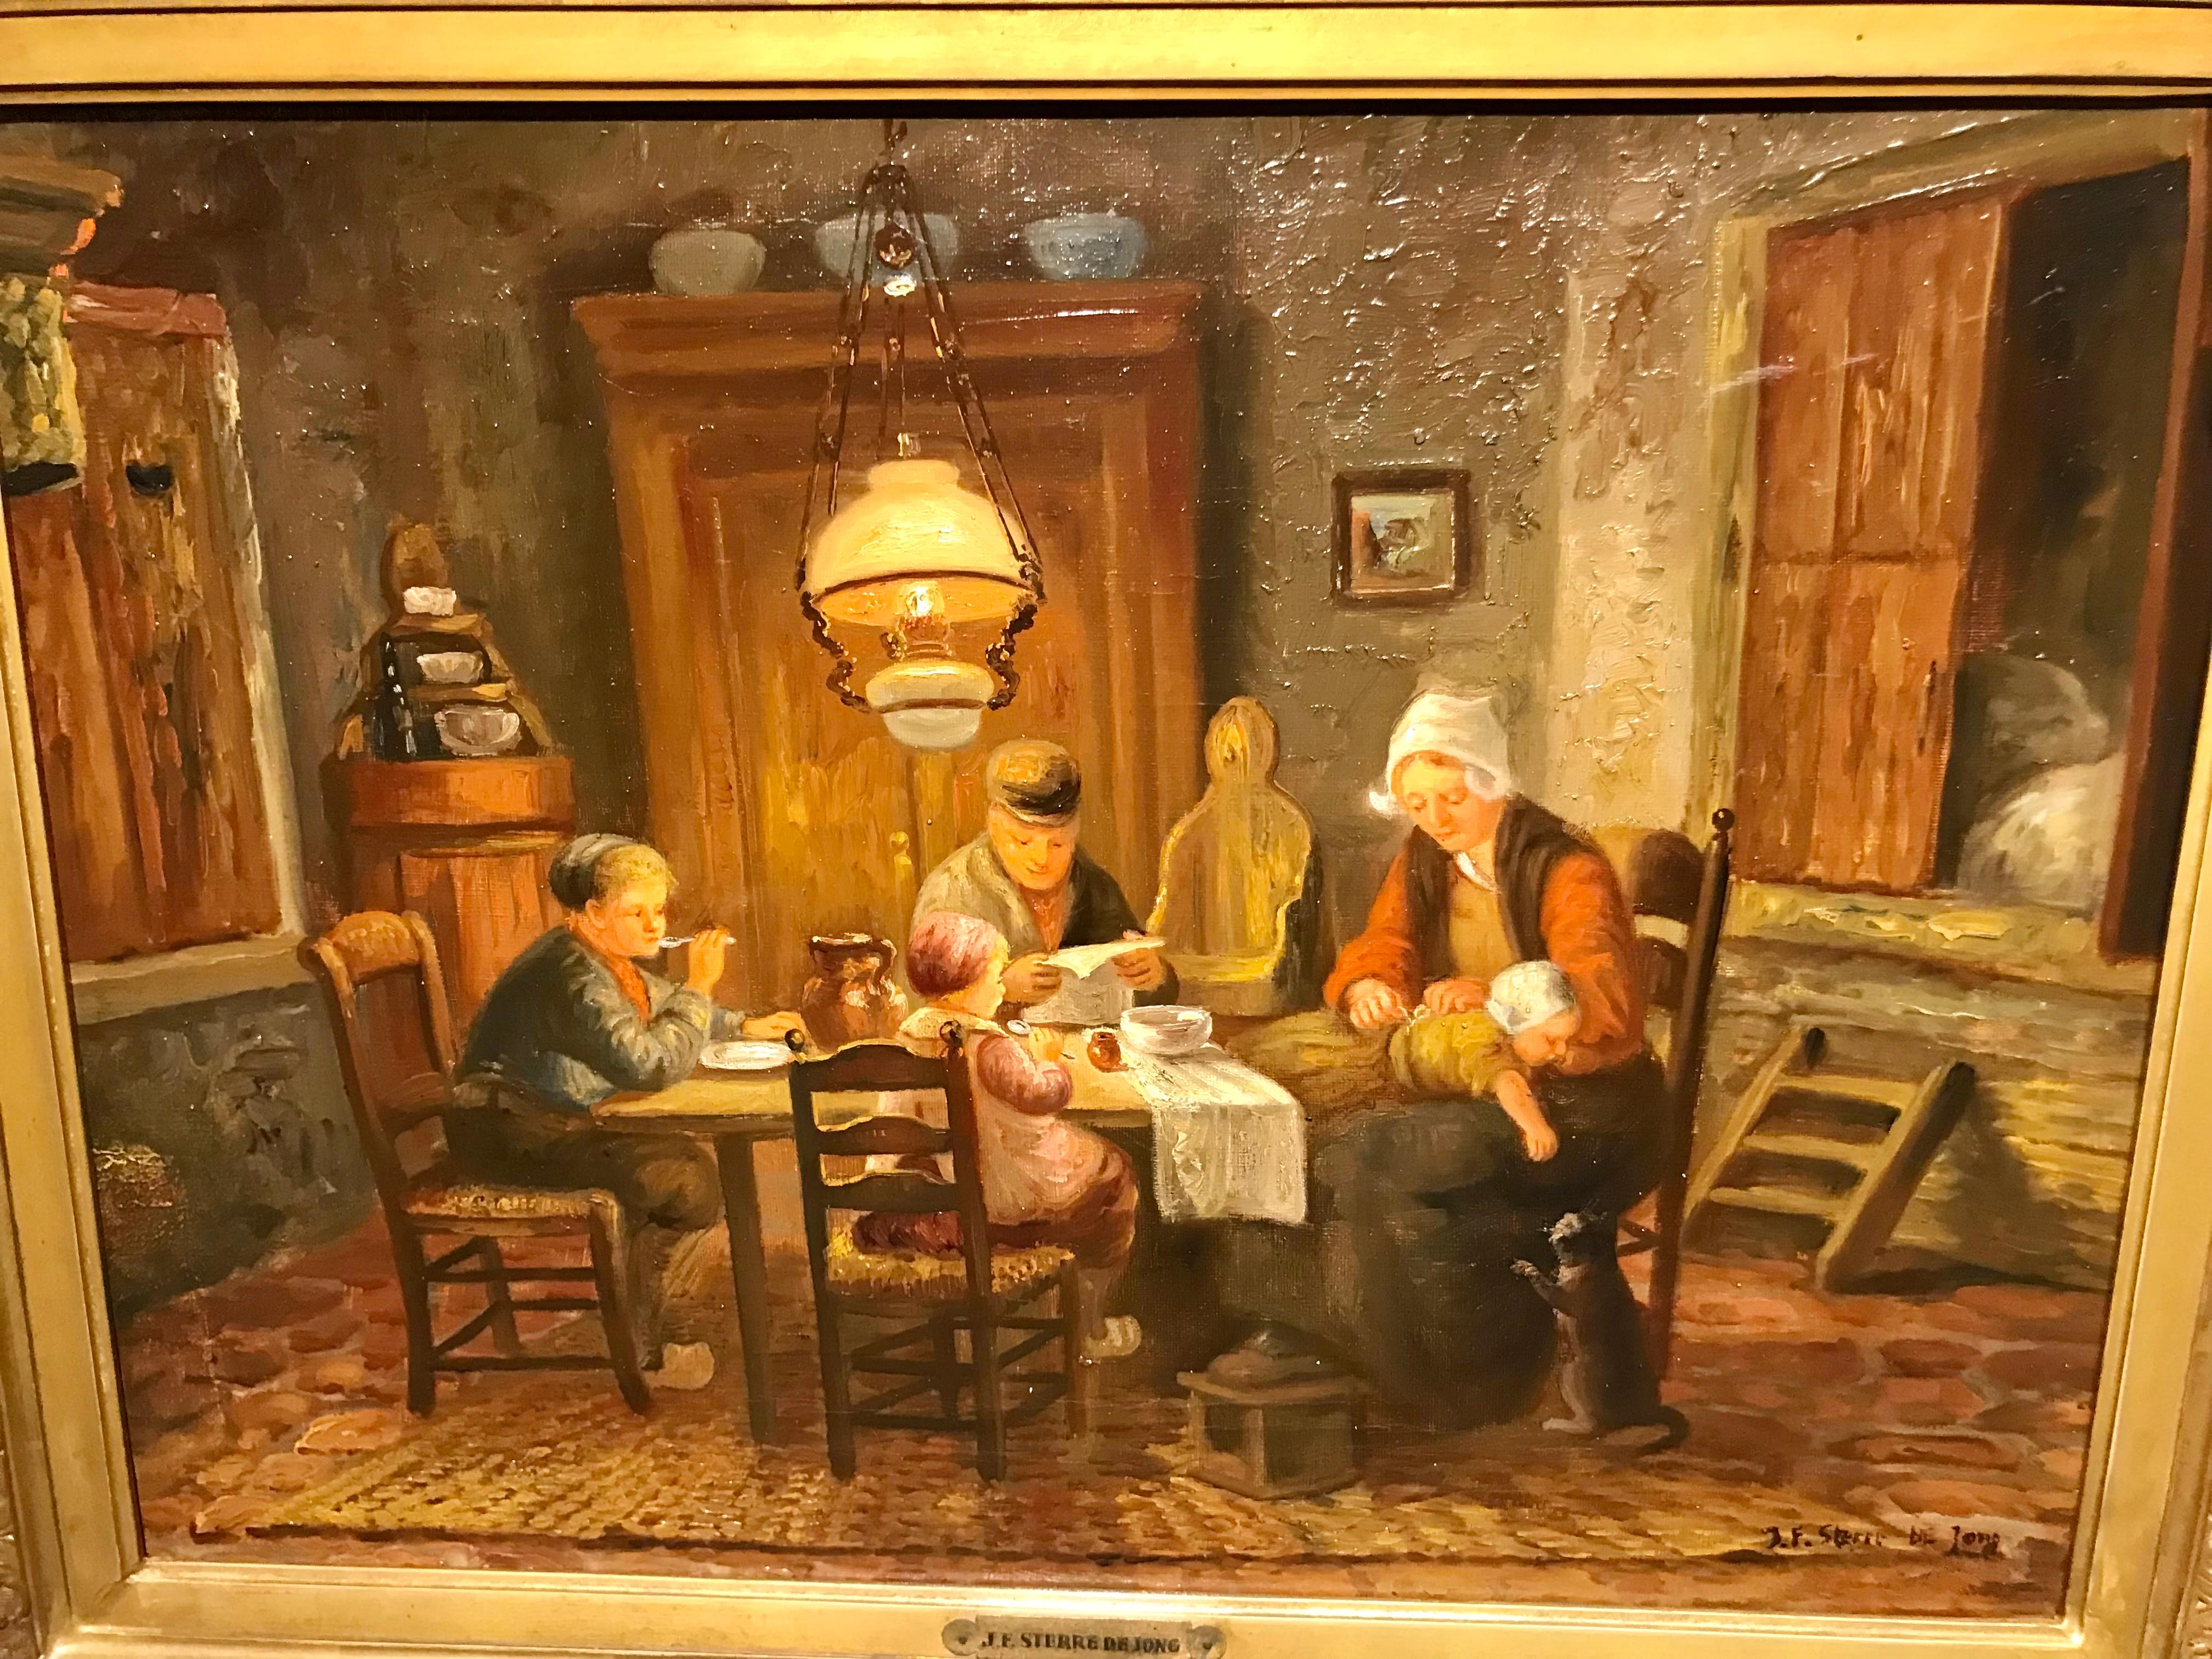 Gemälde „Familie beim Abendessen“, Öl/Leinwand

H 39 x B 53 cm + Rahmung

rechts unten signiert: J.F.Sterre de Jong

Jac. Fred. Sterre de Jong, 1866 - 1920 Laren/Niederlande
